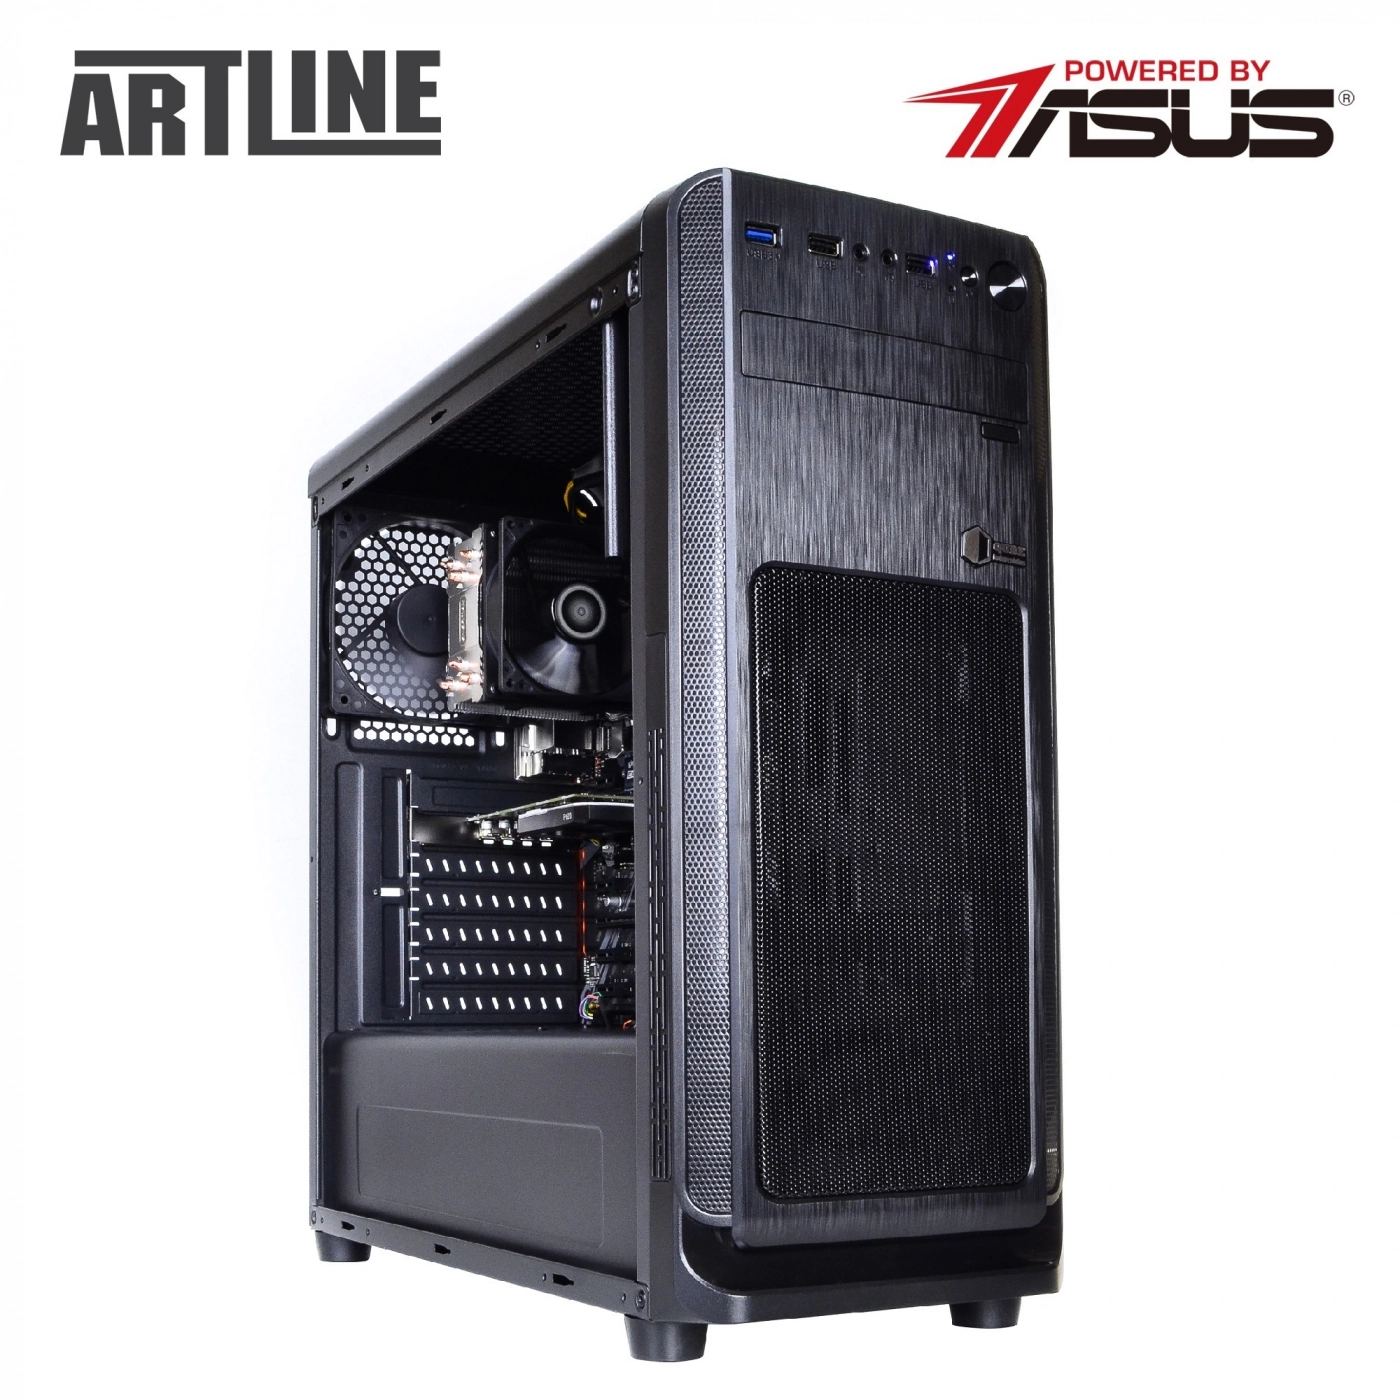 Купить Сервер ARTLINE Business T25v33 - фото 15